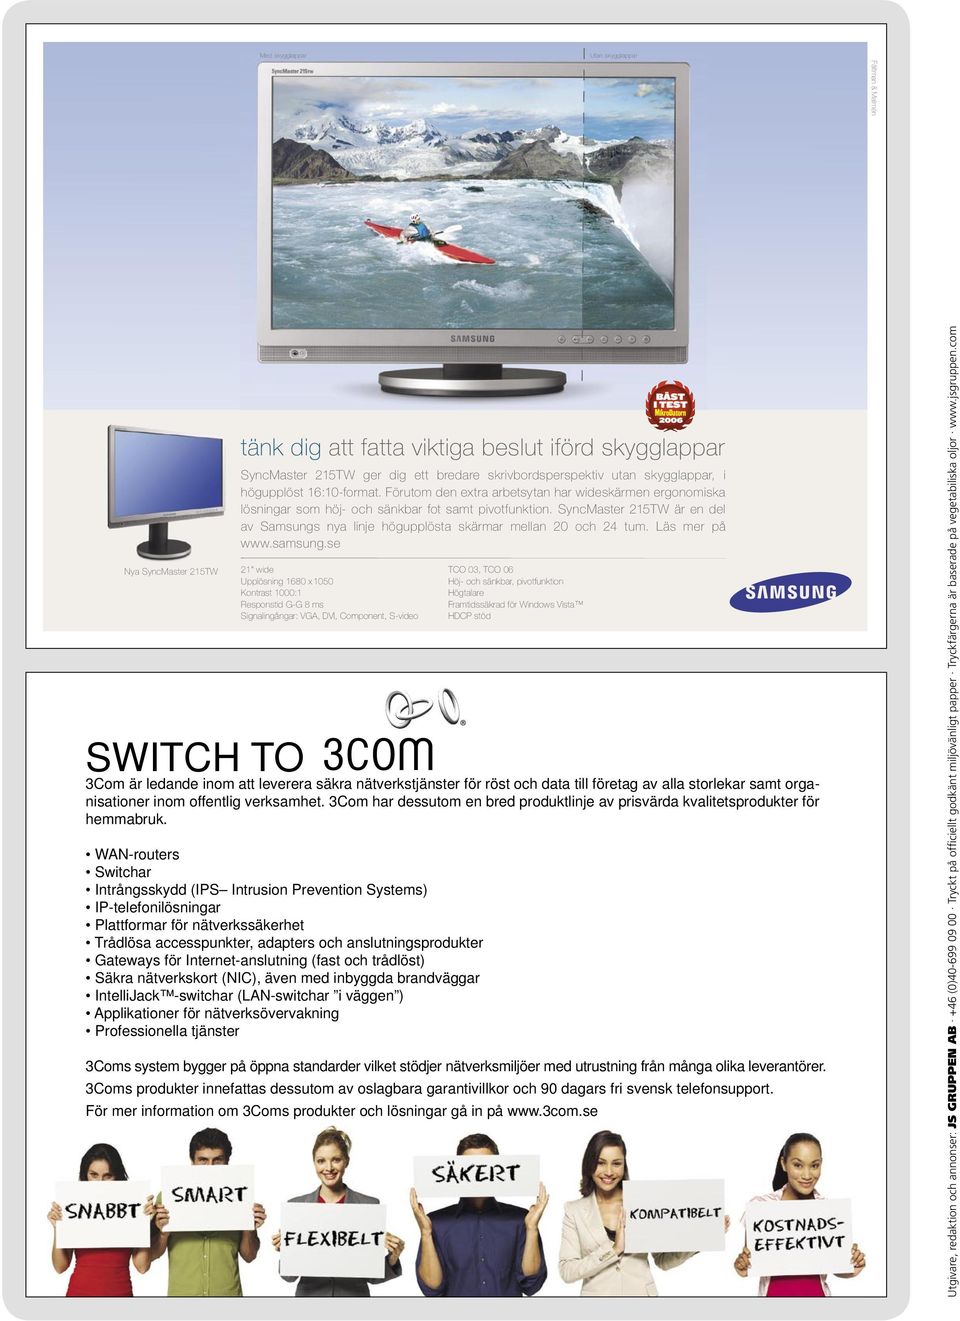 SyncMaster 215TW är en del av Samsungs nya linje högupplösta skärmar mellan 20 och 24 tum. Läs mer på www.samsung.